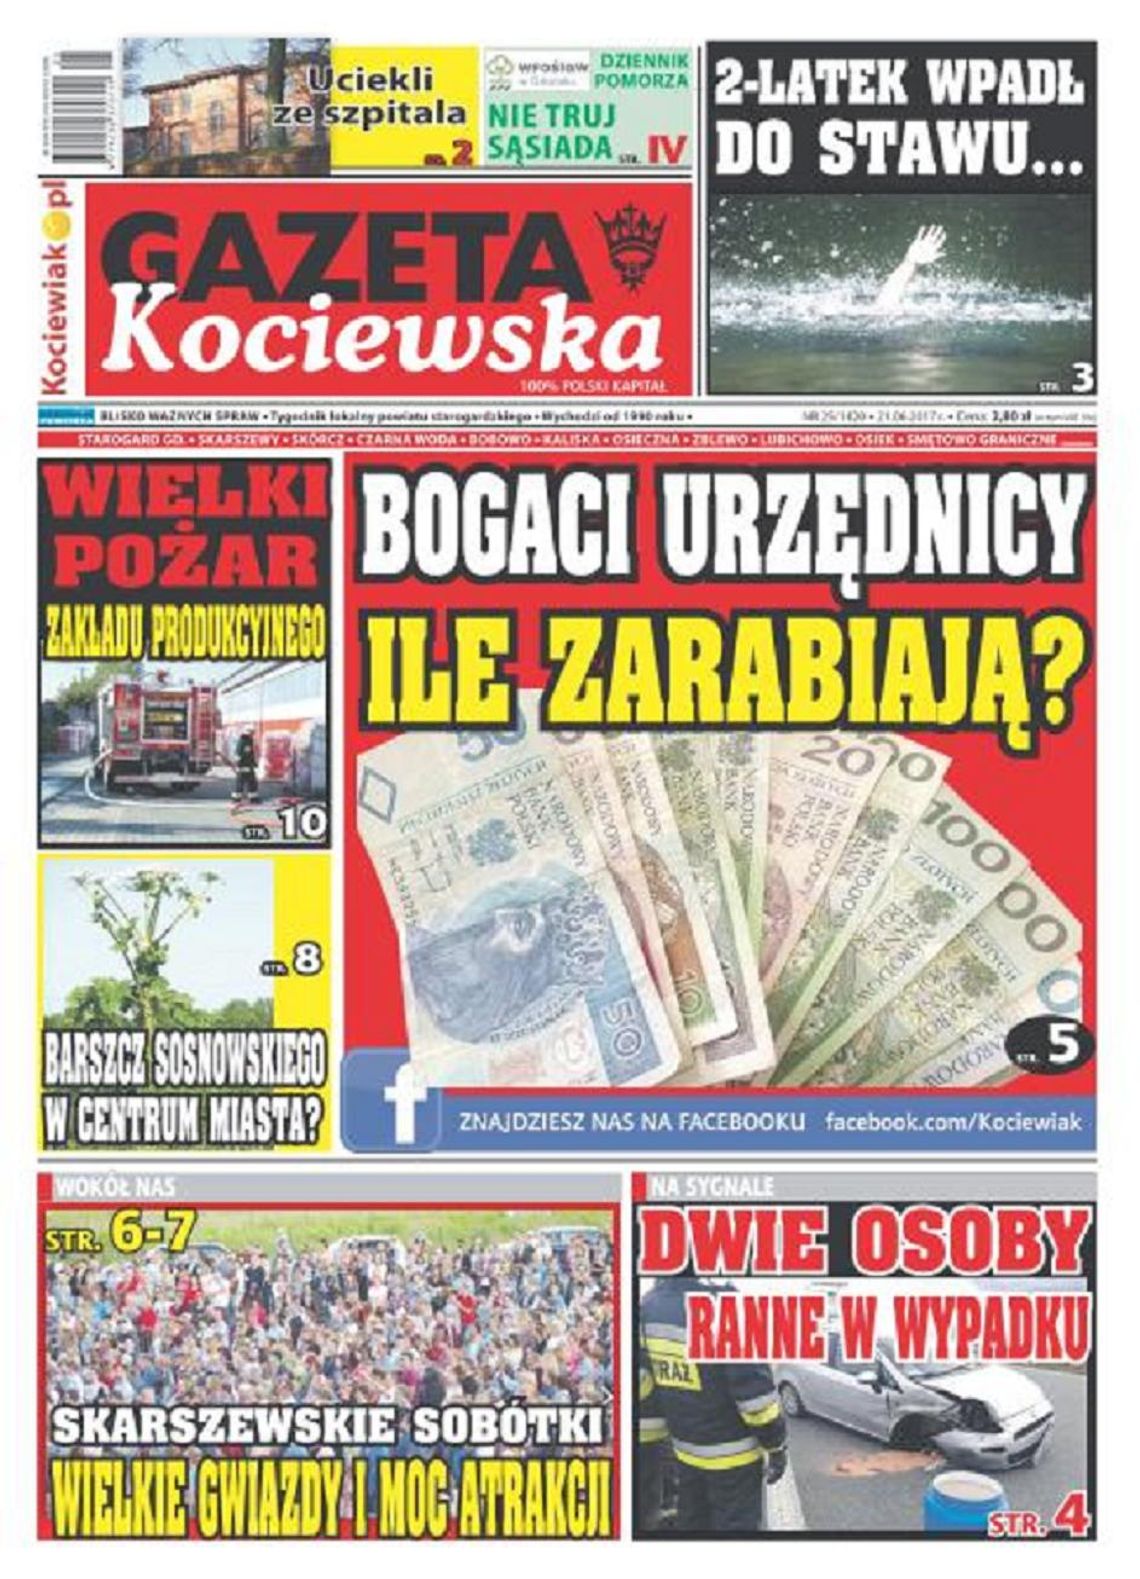 Najnowsza Gazeta Kociewska już w Twoim kiosku!